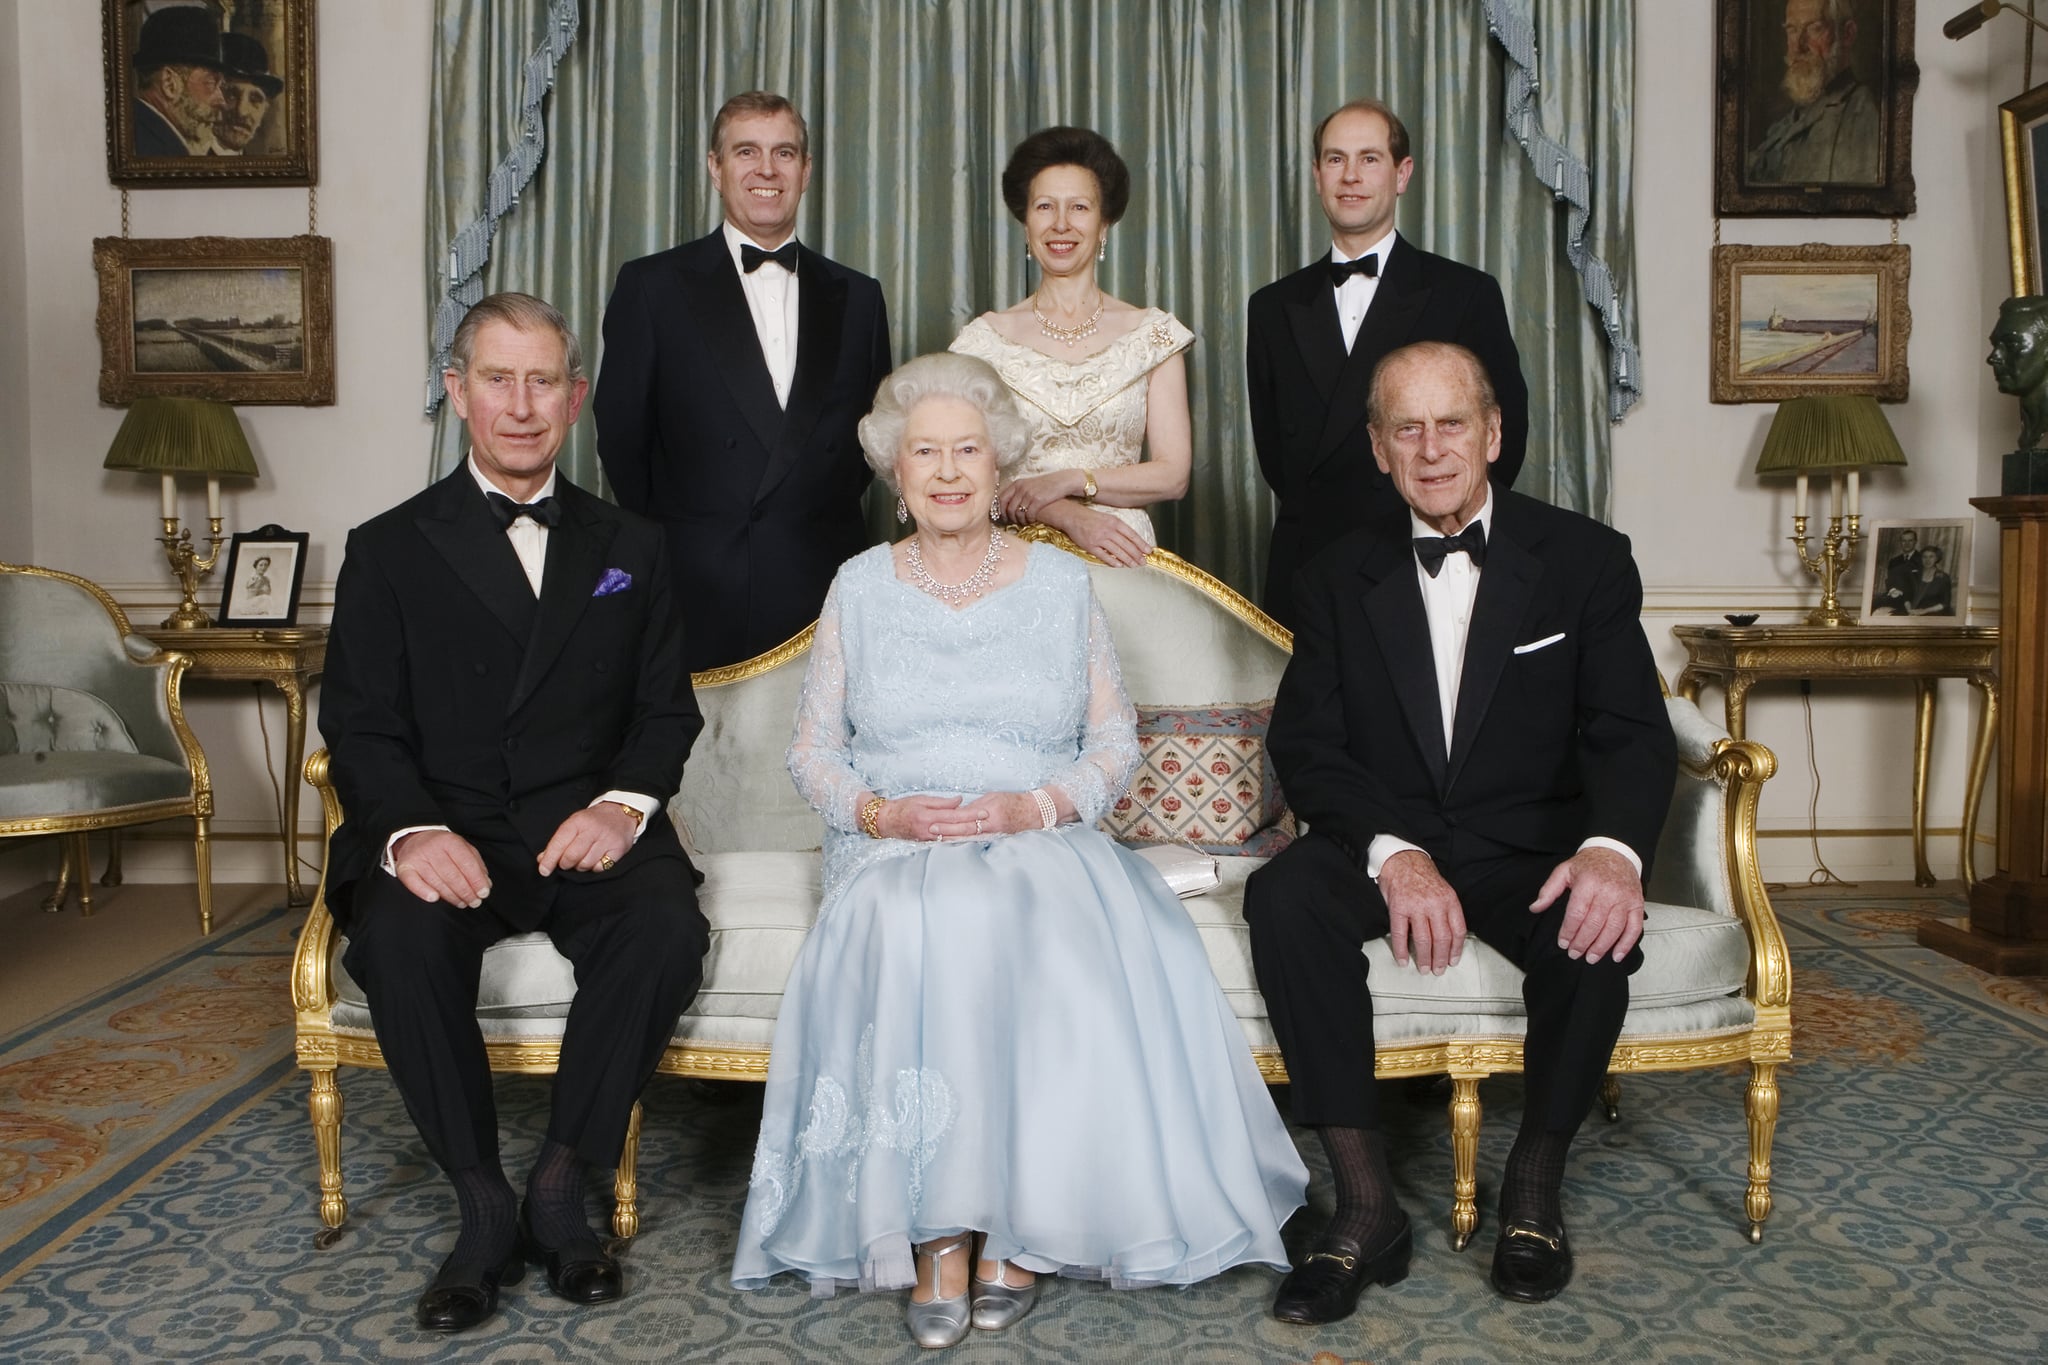 Queen Elizabeth II with her husband and children in 2007